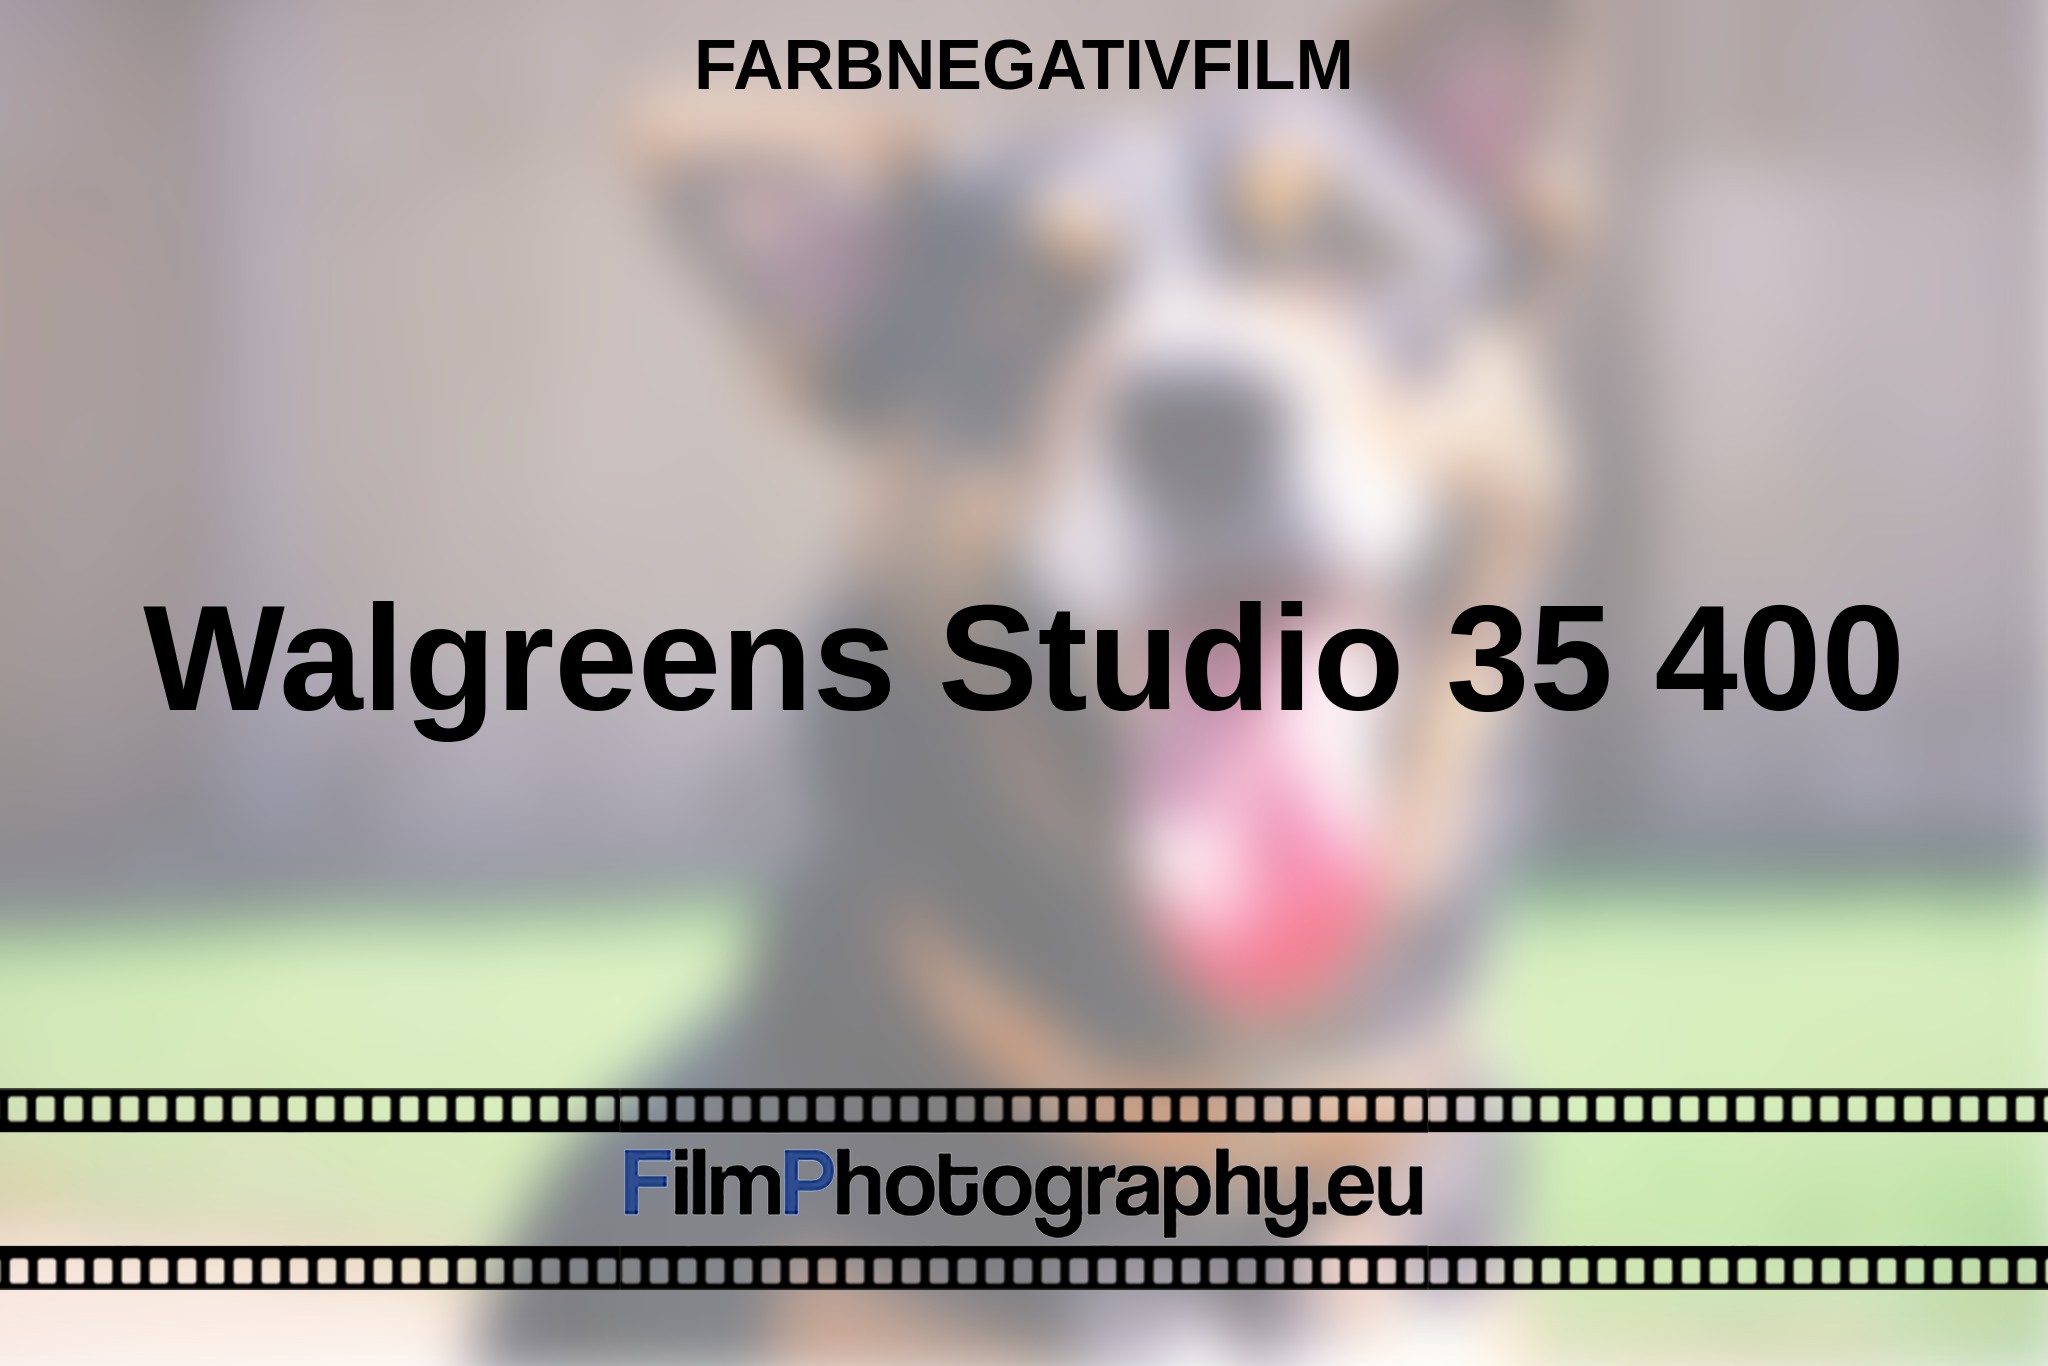 walgreens-studio-35-400-farbnegativfilm-bnv.jpg